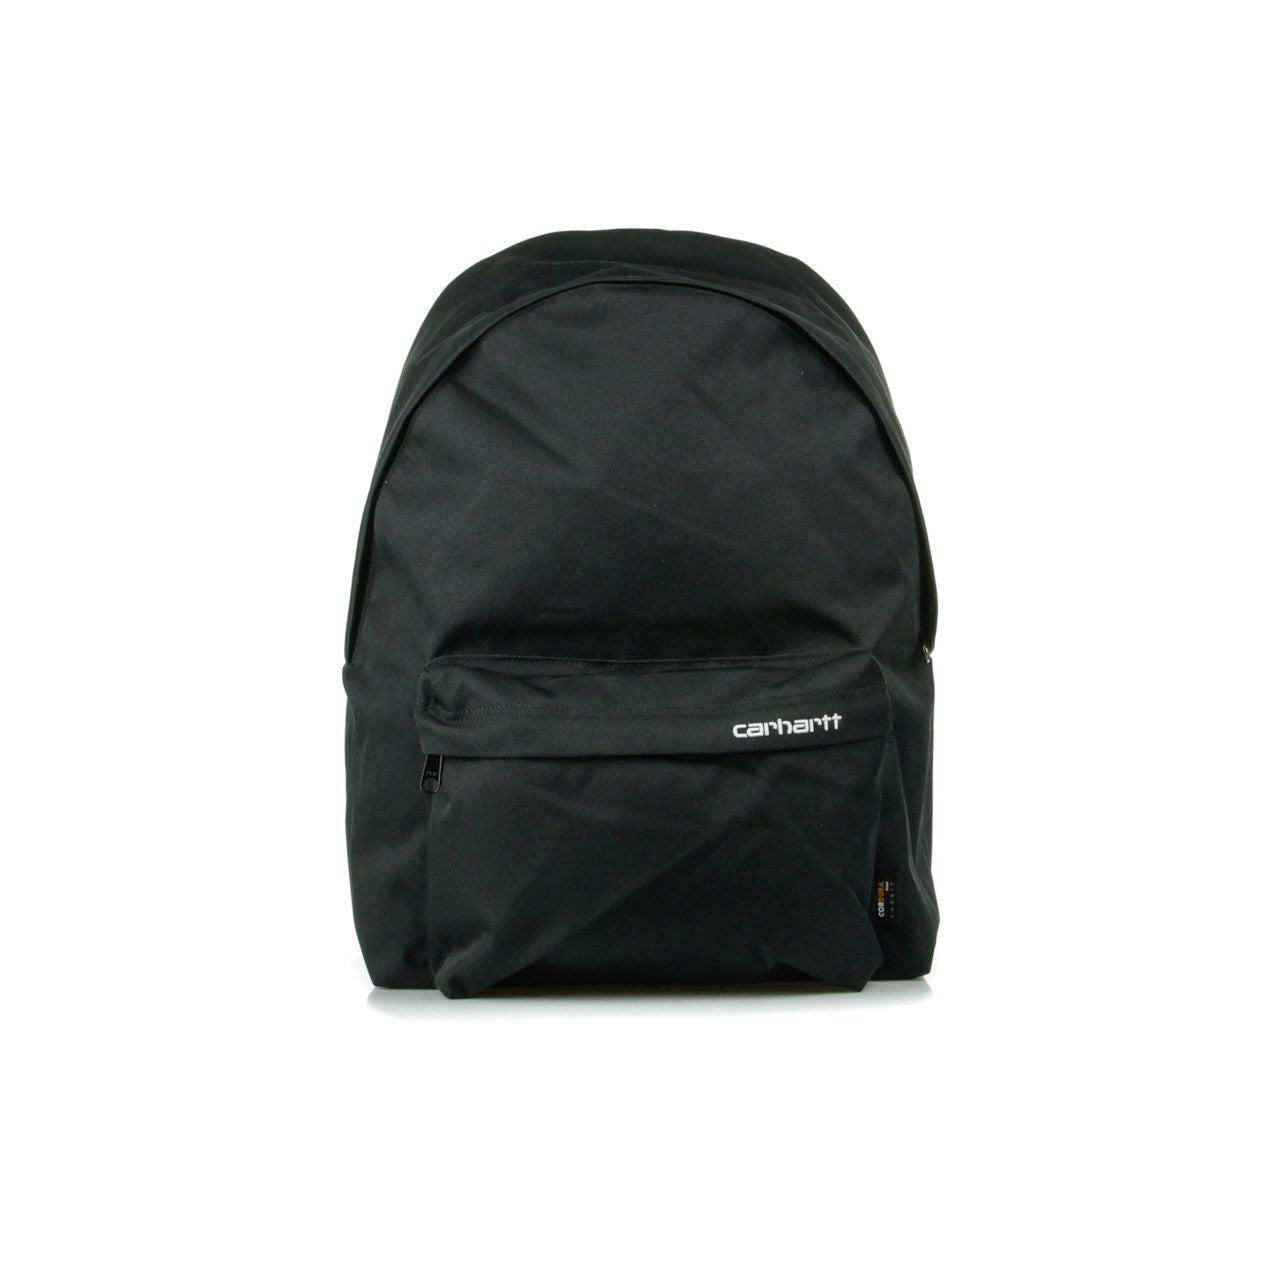 Payton Backpack Men's Backpack Black/white